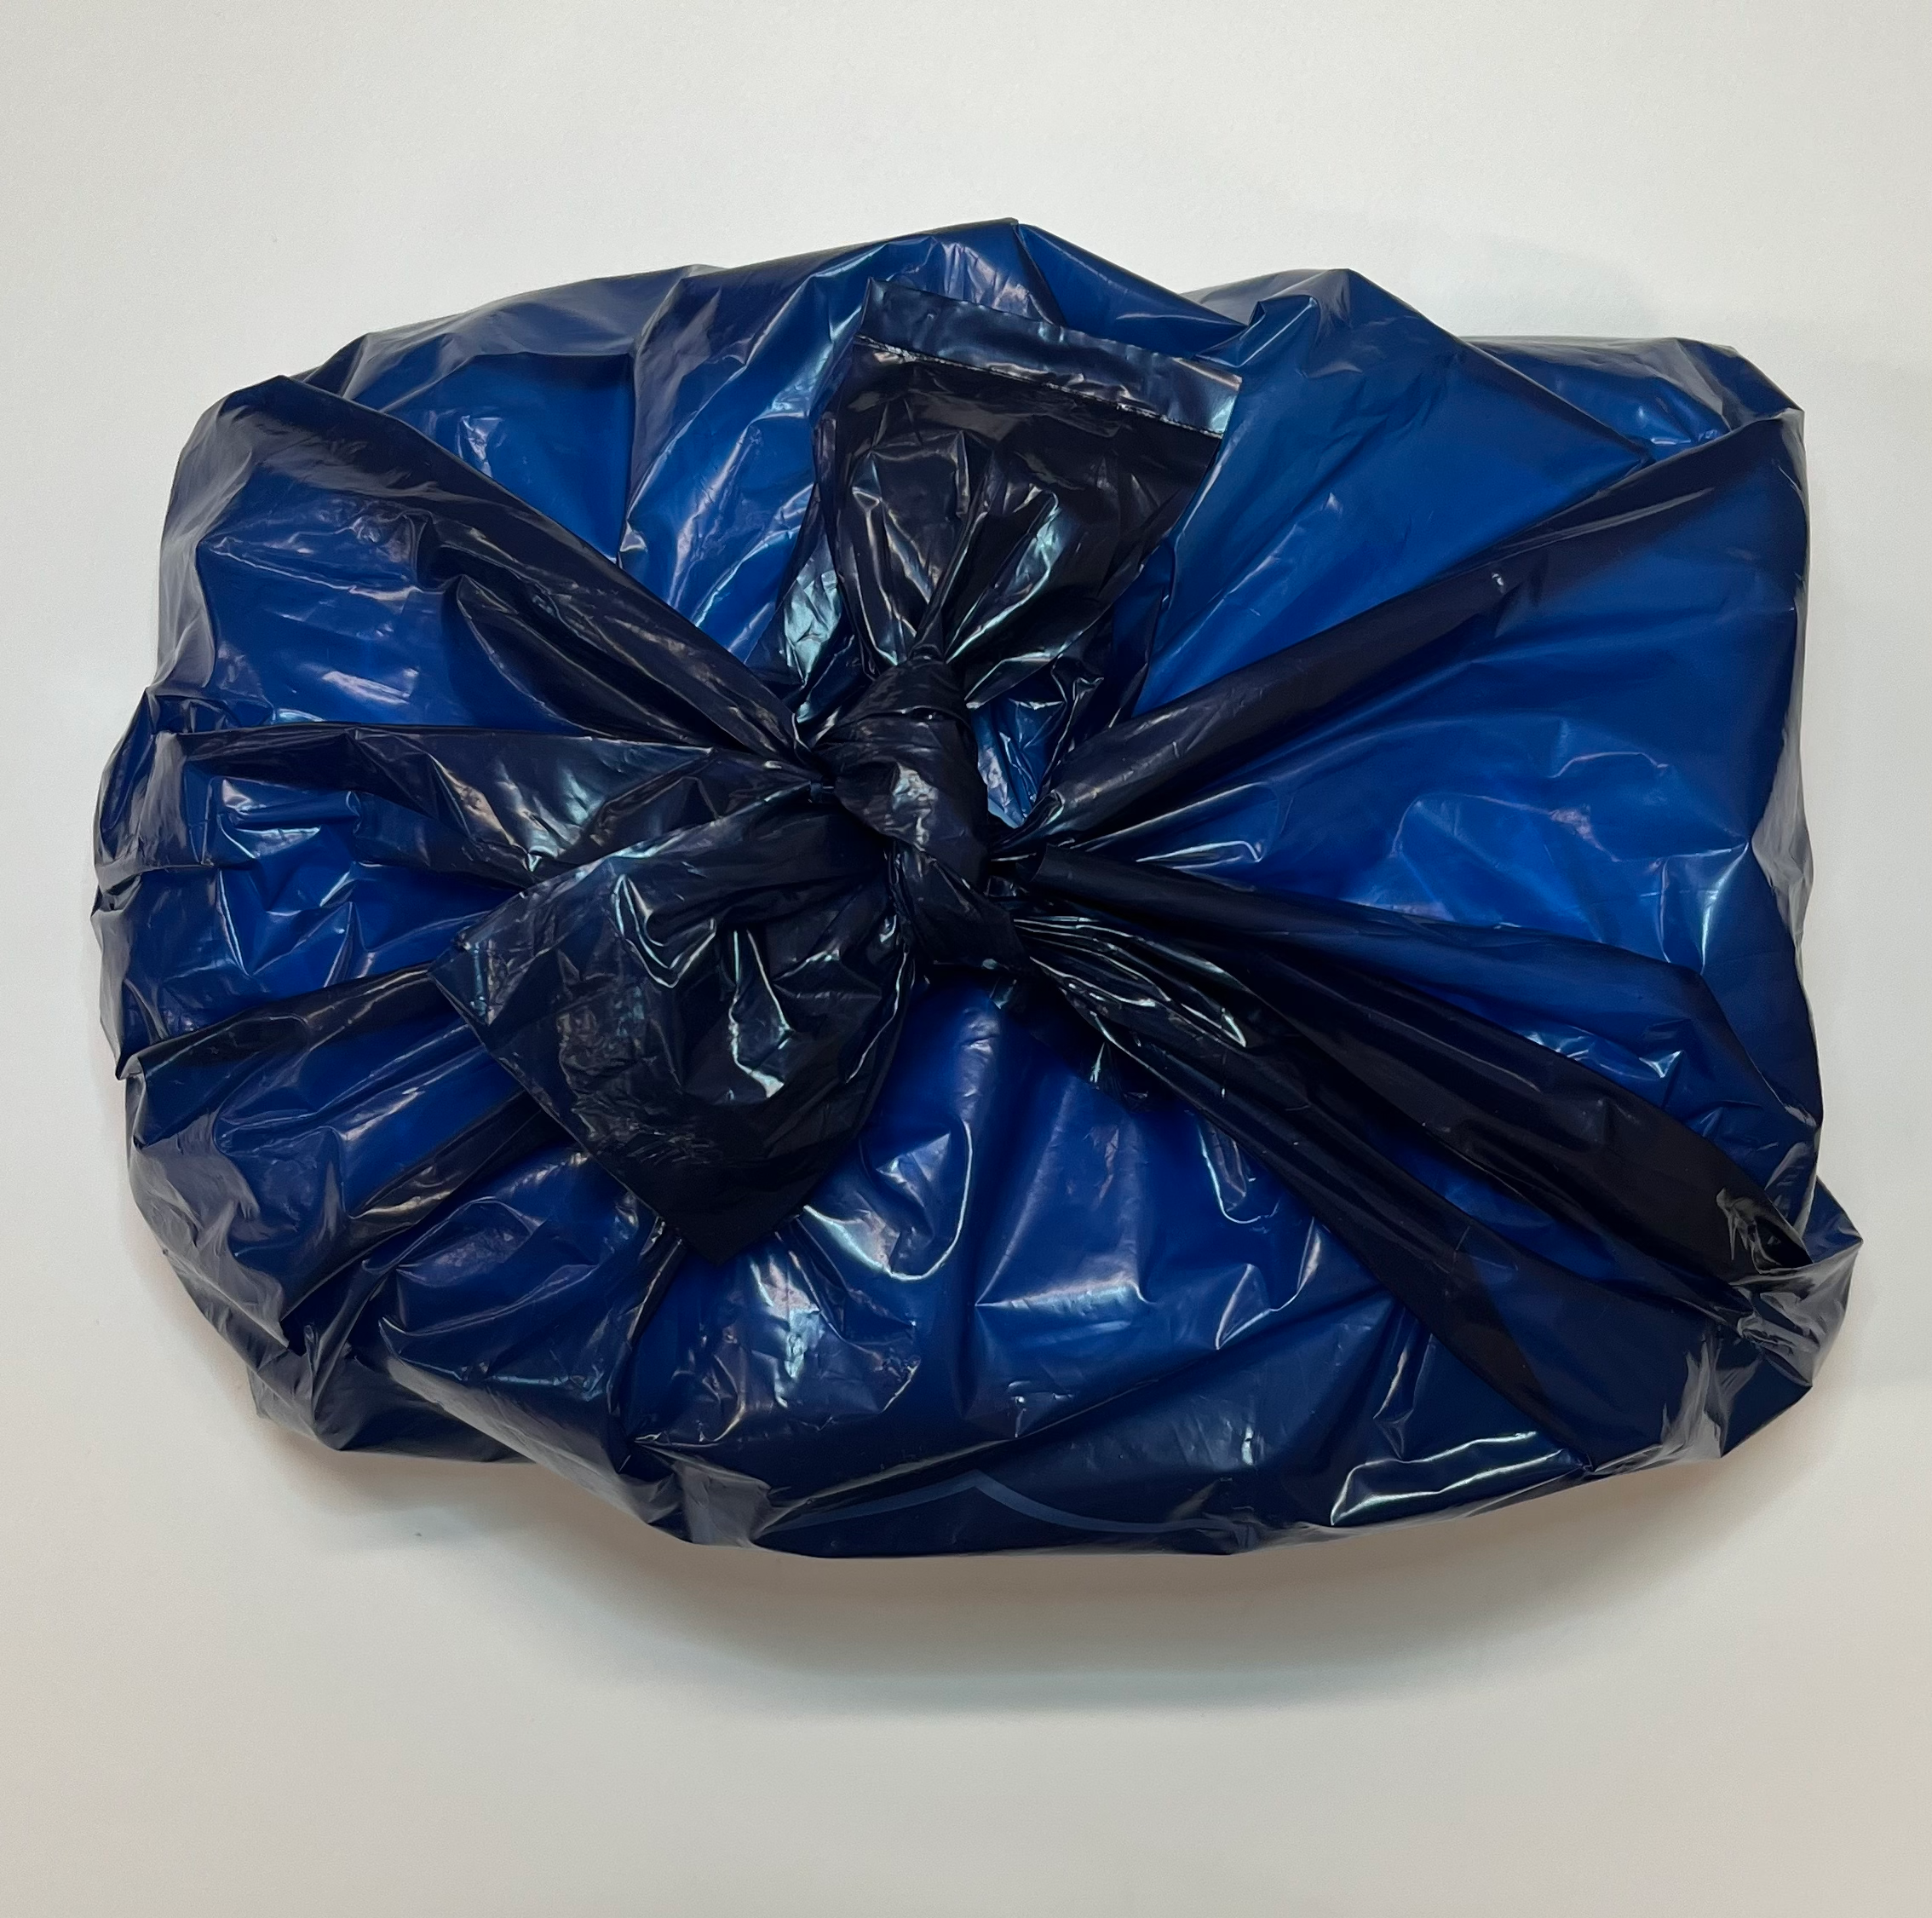 Handles of DiscreetShield adult diaper disposal bag